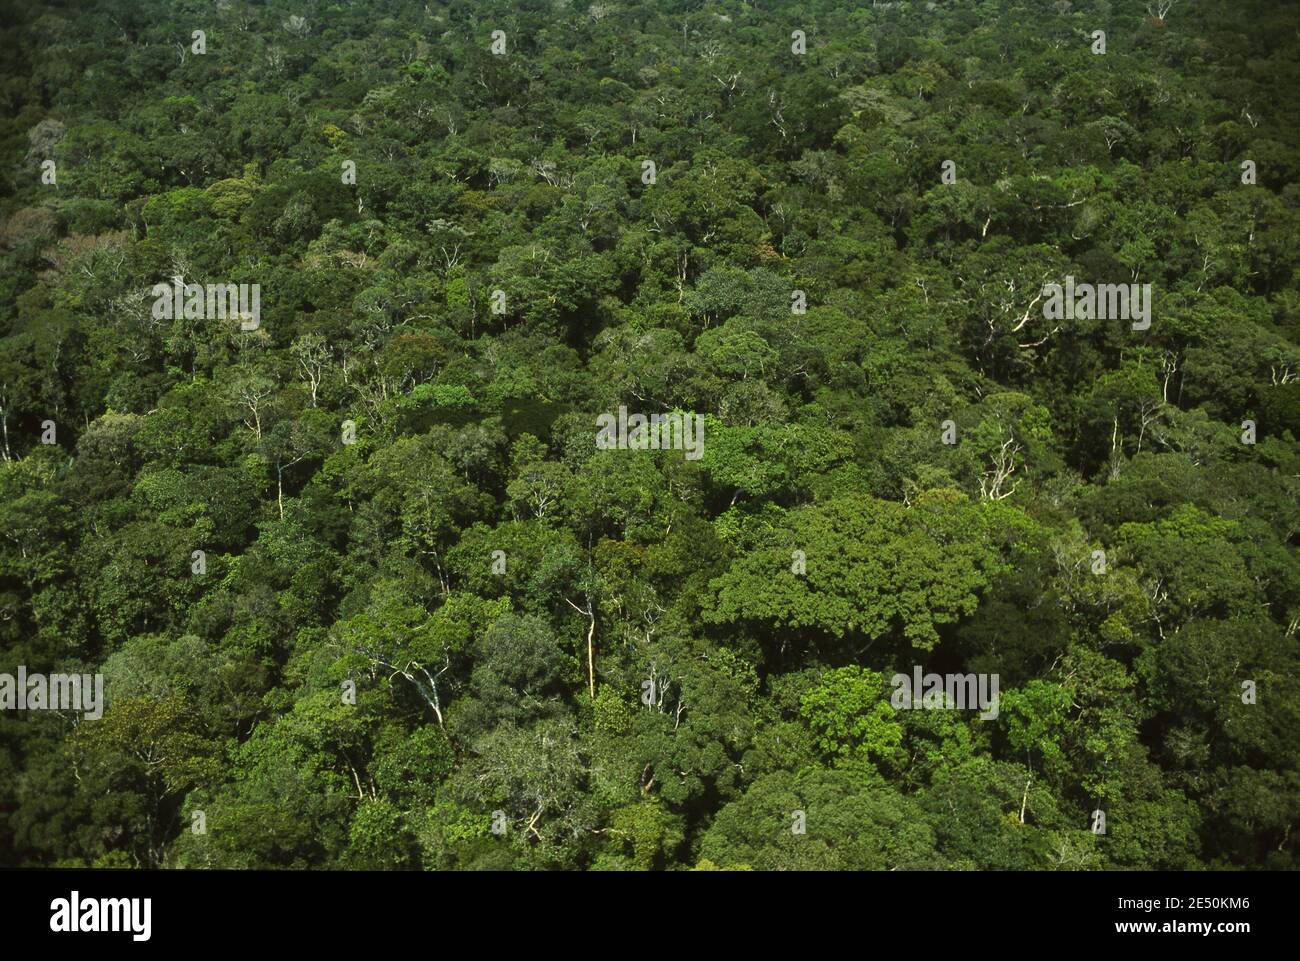 Vista aerea della foresta densa intatta e conservata con un'elevata biodiversità - alberi a baldacchino - foresta pluviale amazzonica, Brasile. Foto Stock